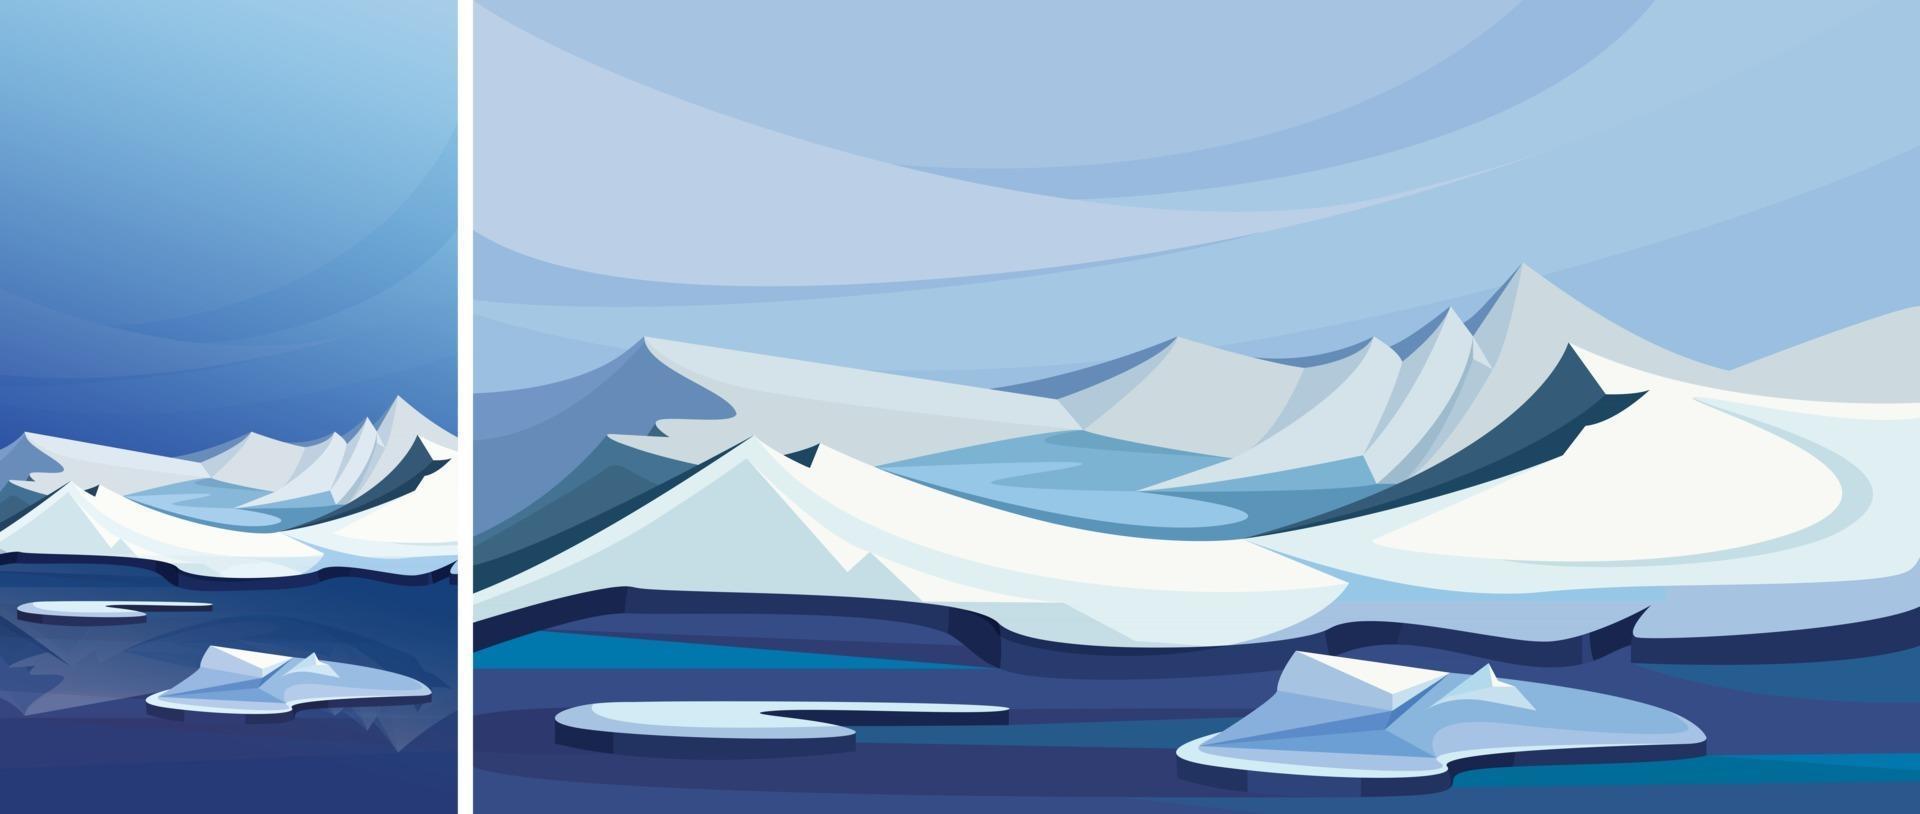 arktiskt landskap med isberg. naturlandskap i vertikal och horisontell orientering. vektor